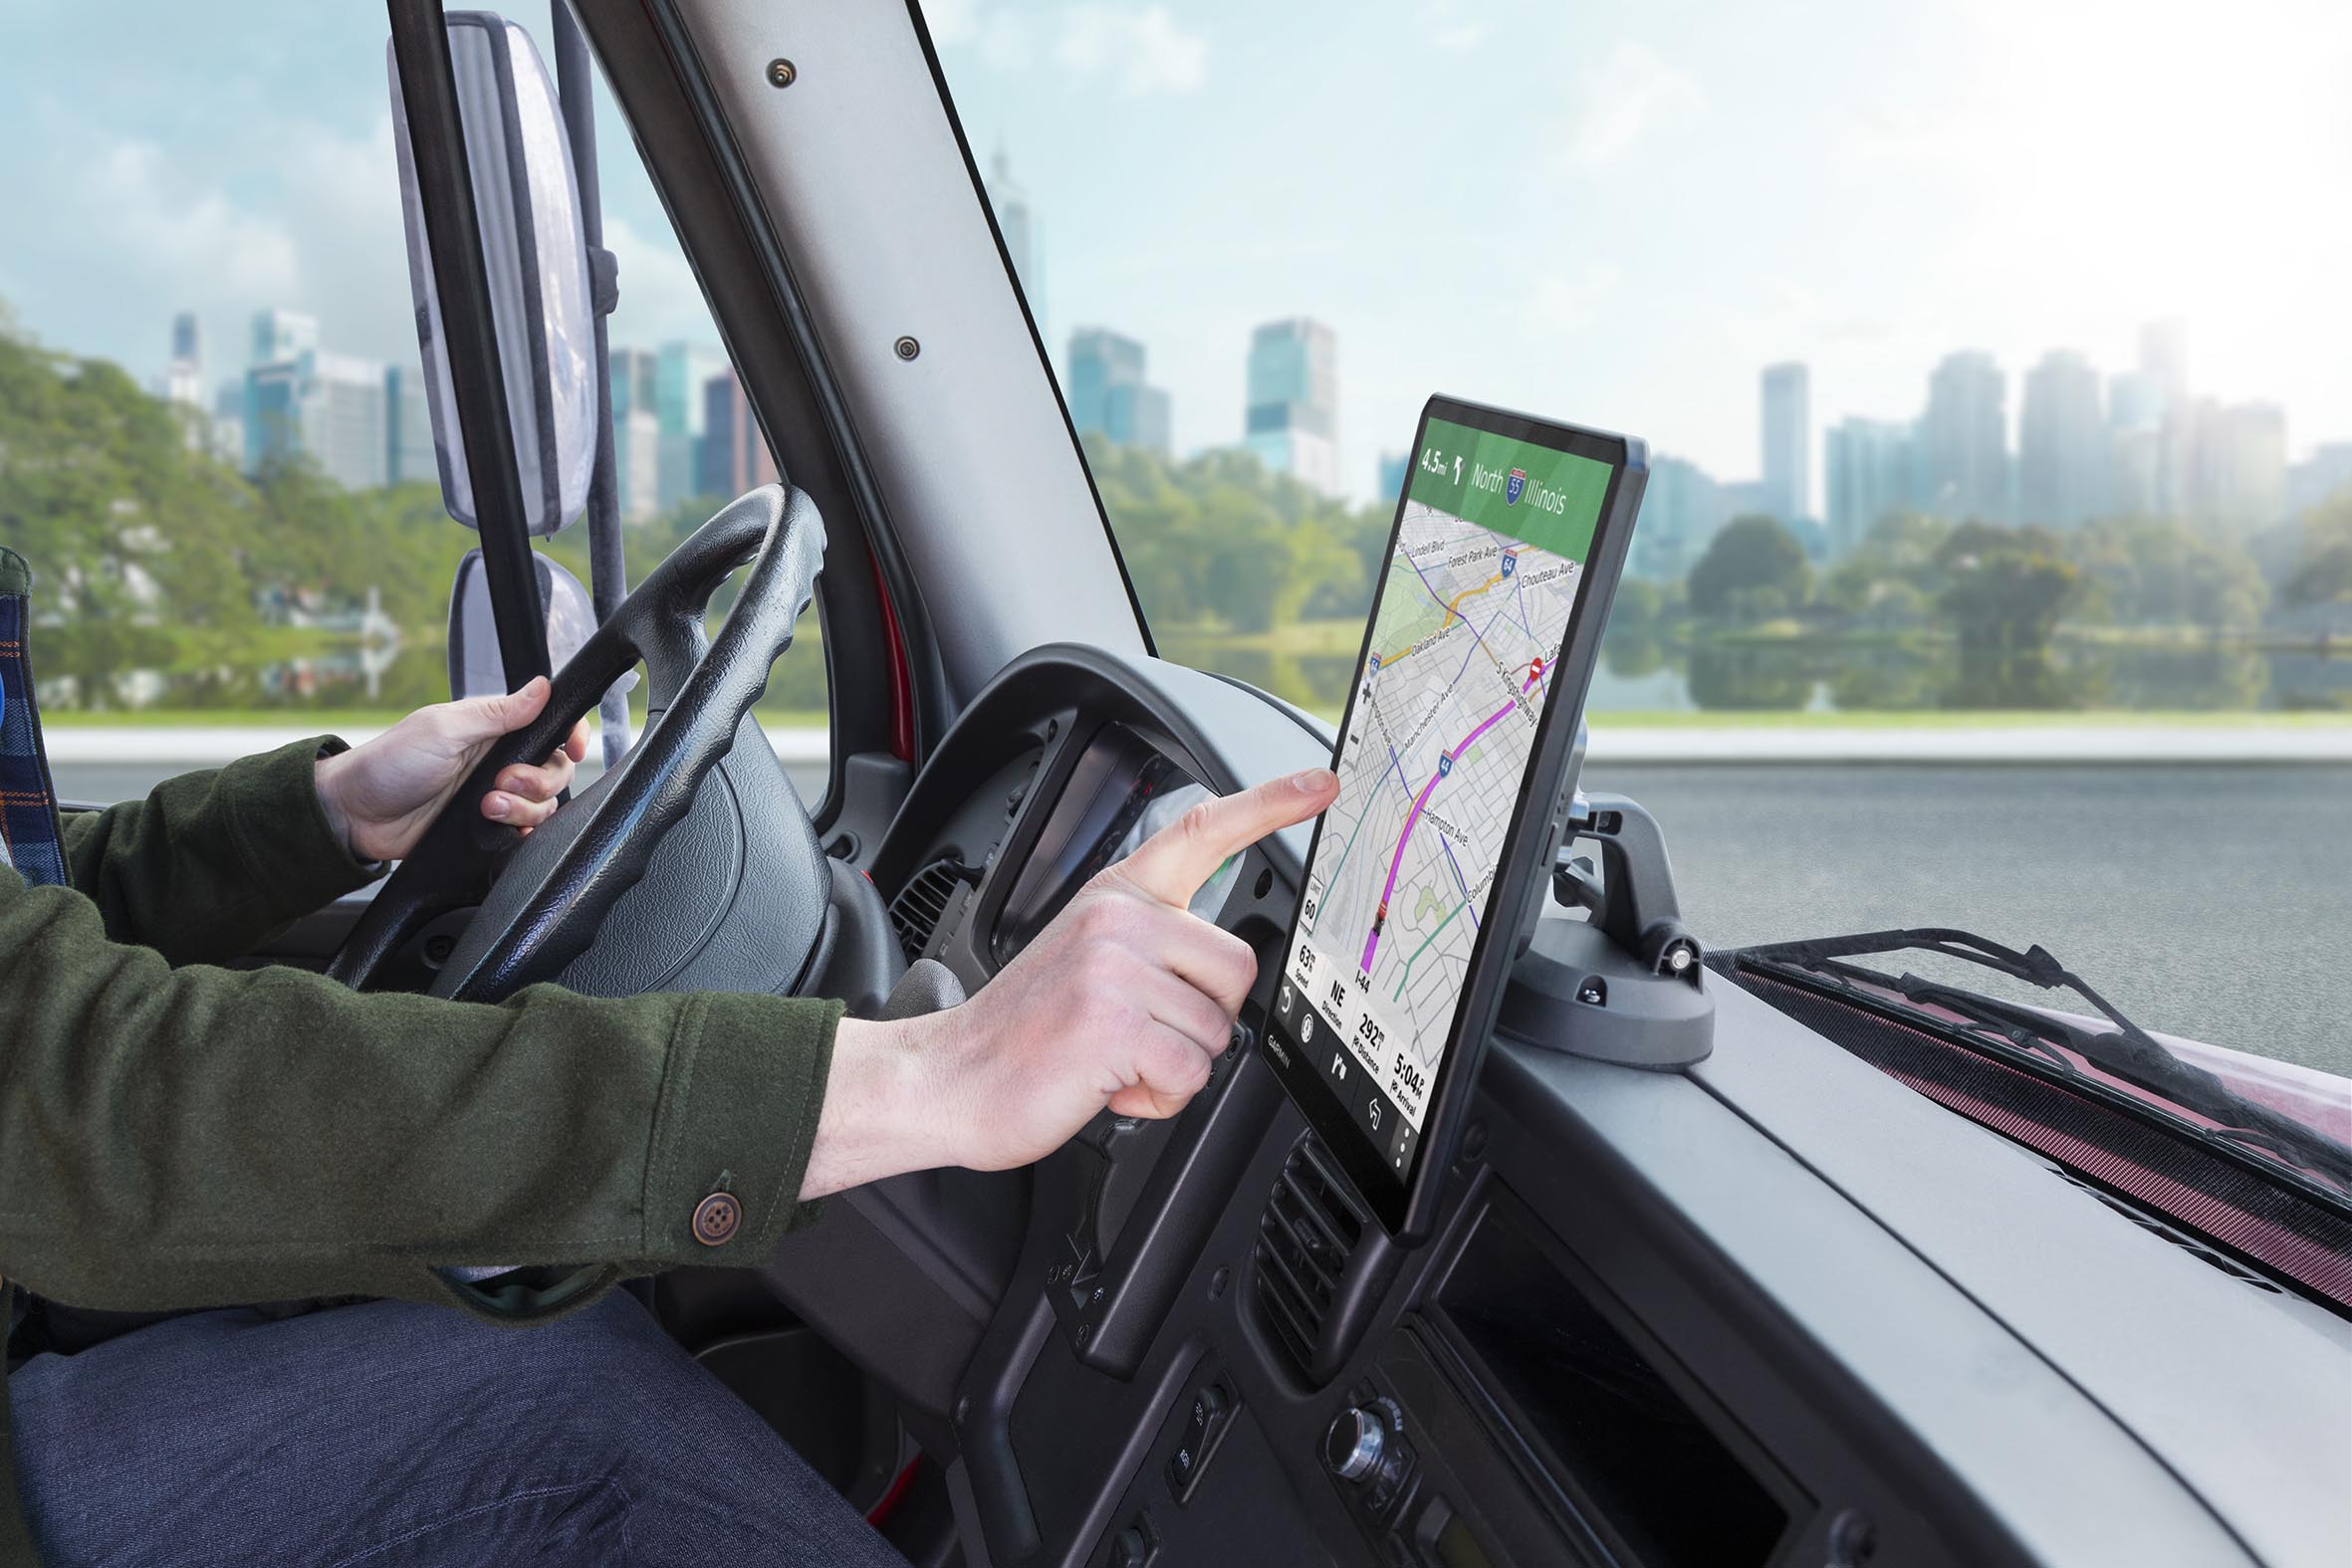 Las mejores ofertas en Unidades GPS camión